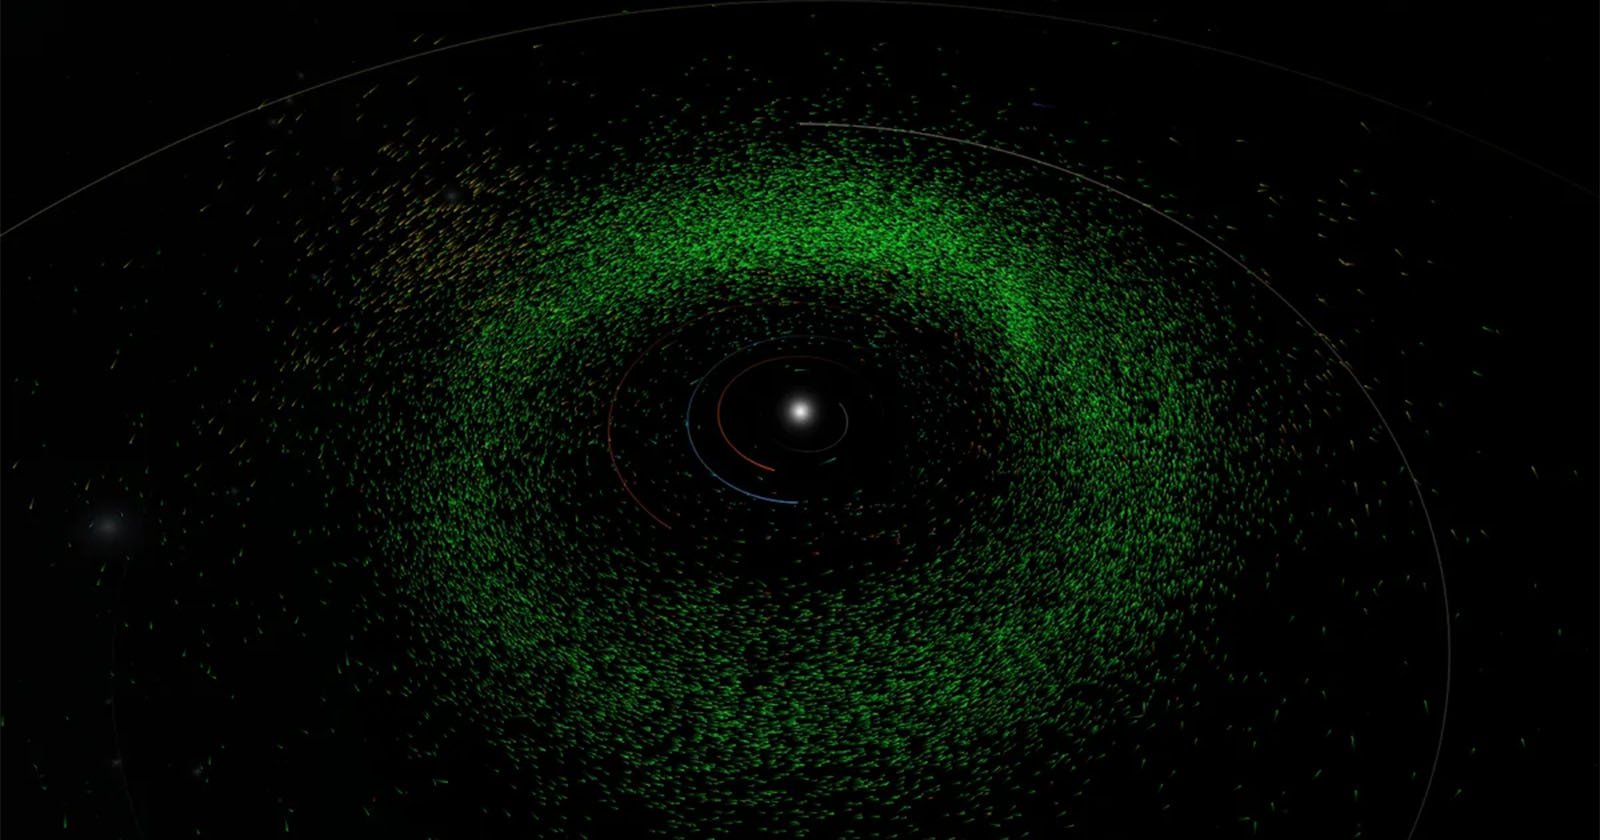 Künstliche Intelligenz findet in vorhandenen Teleskopbildern fast 30.000 unbekannte Asteroiden